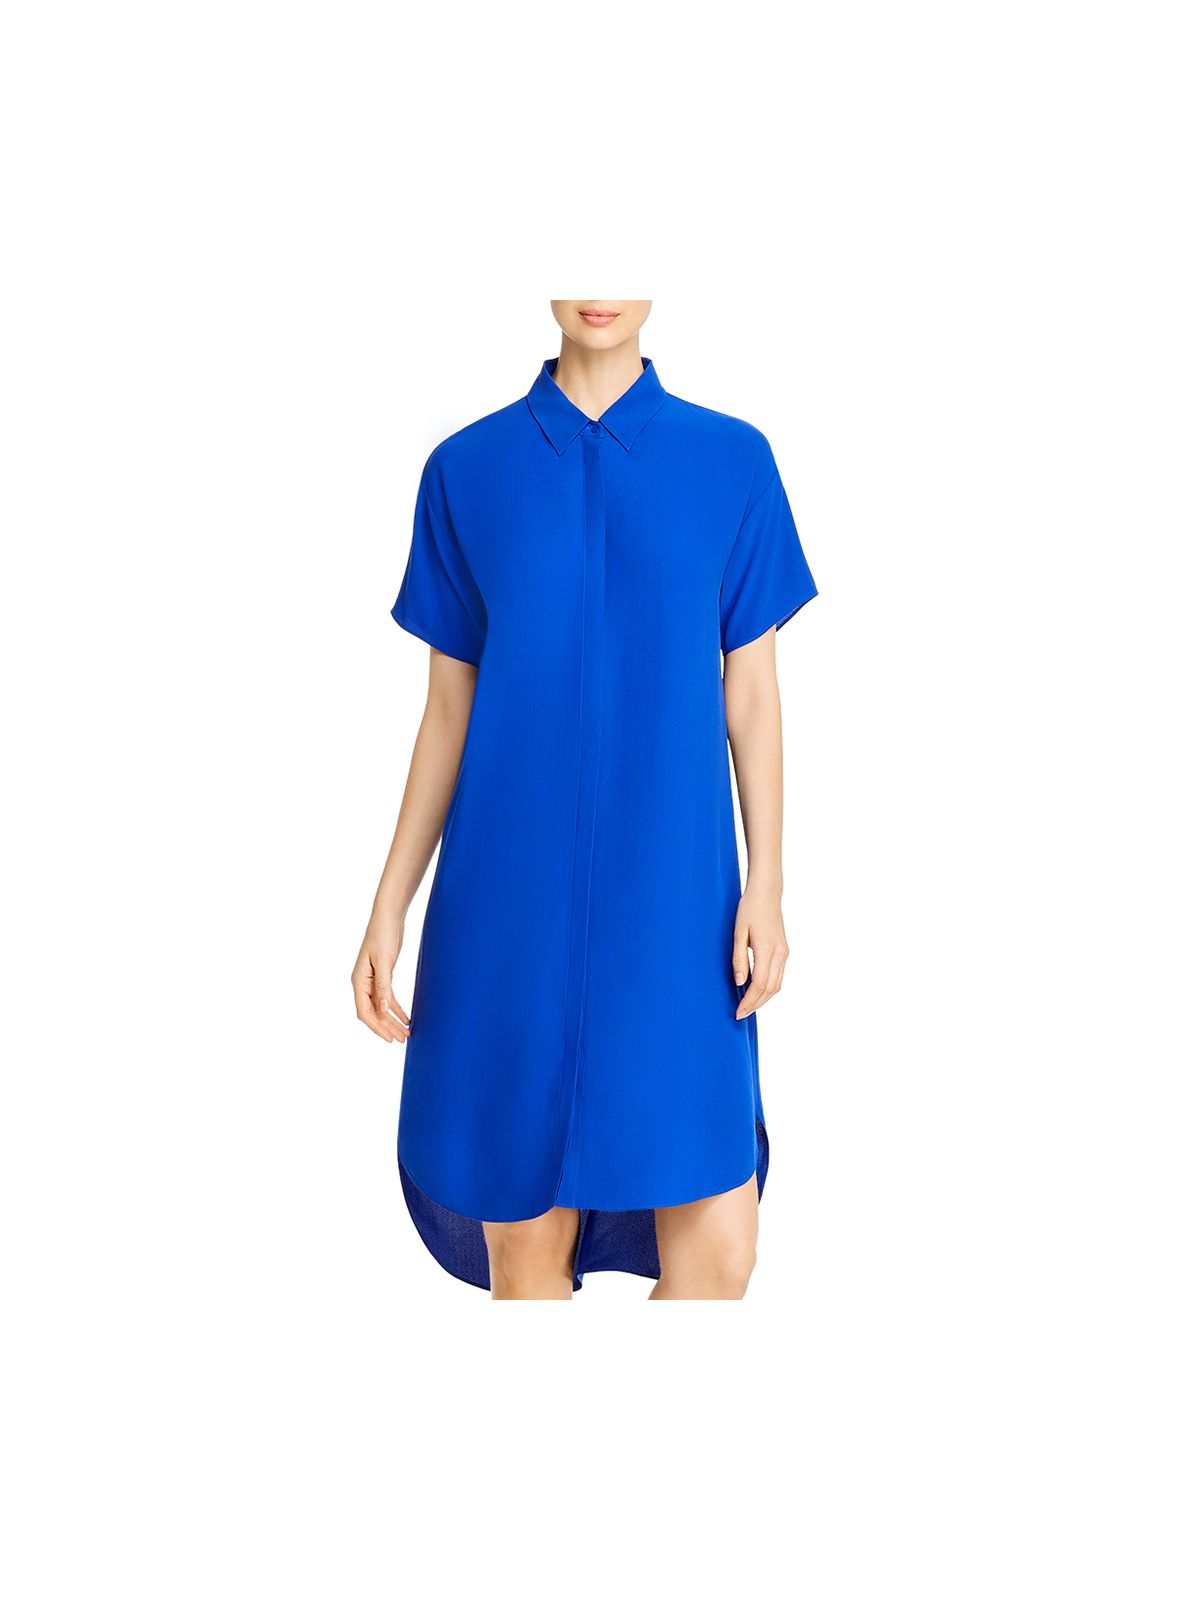 EILEEN FISHER Womens Blue Short Sleeve Point Collar Midi Shirt Dress XS